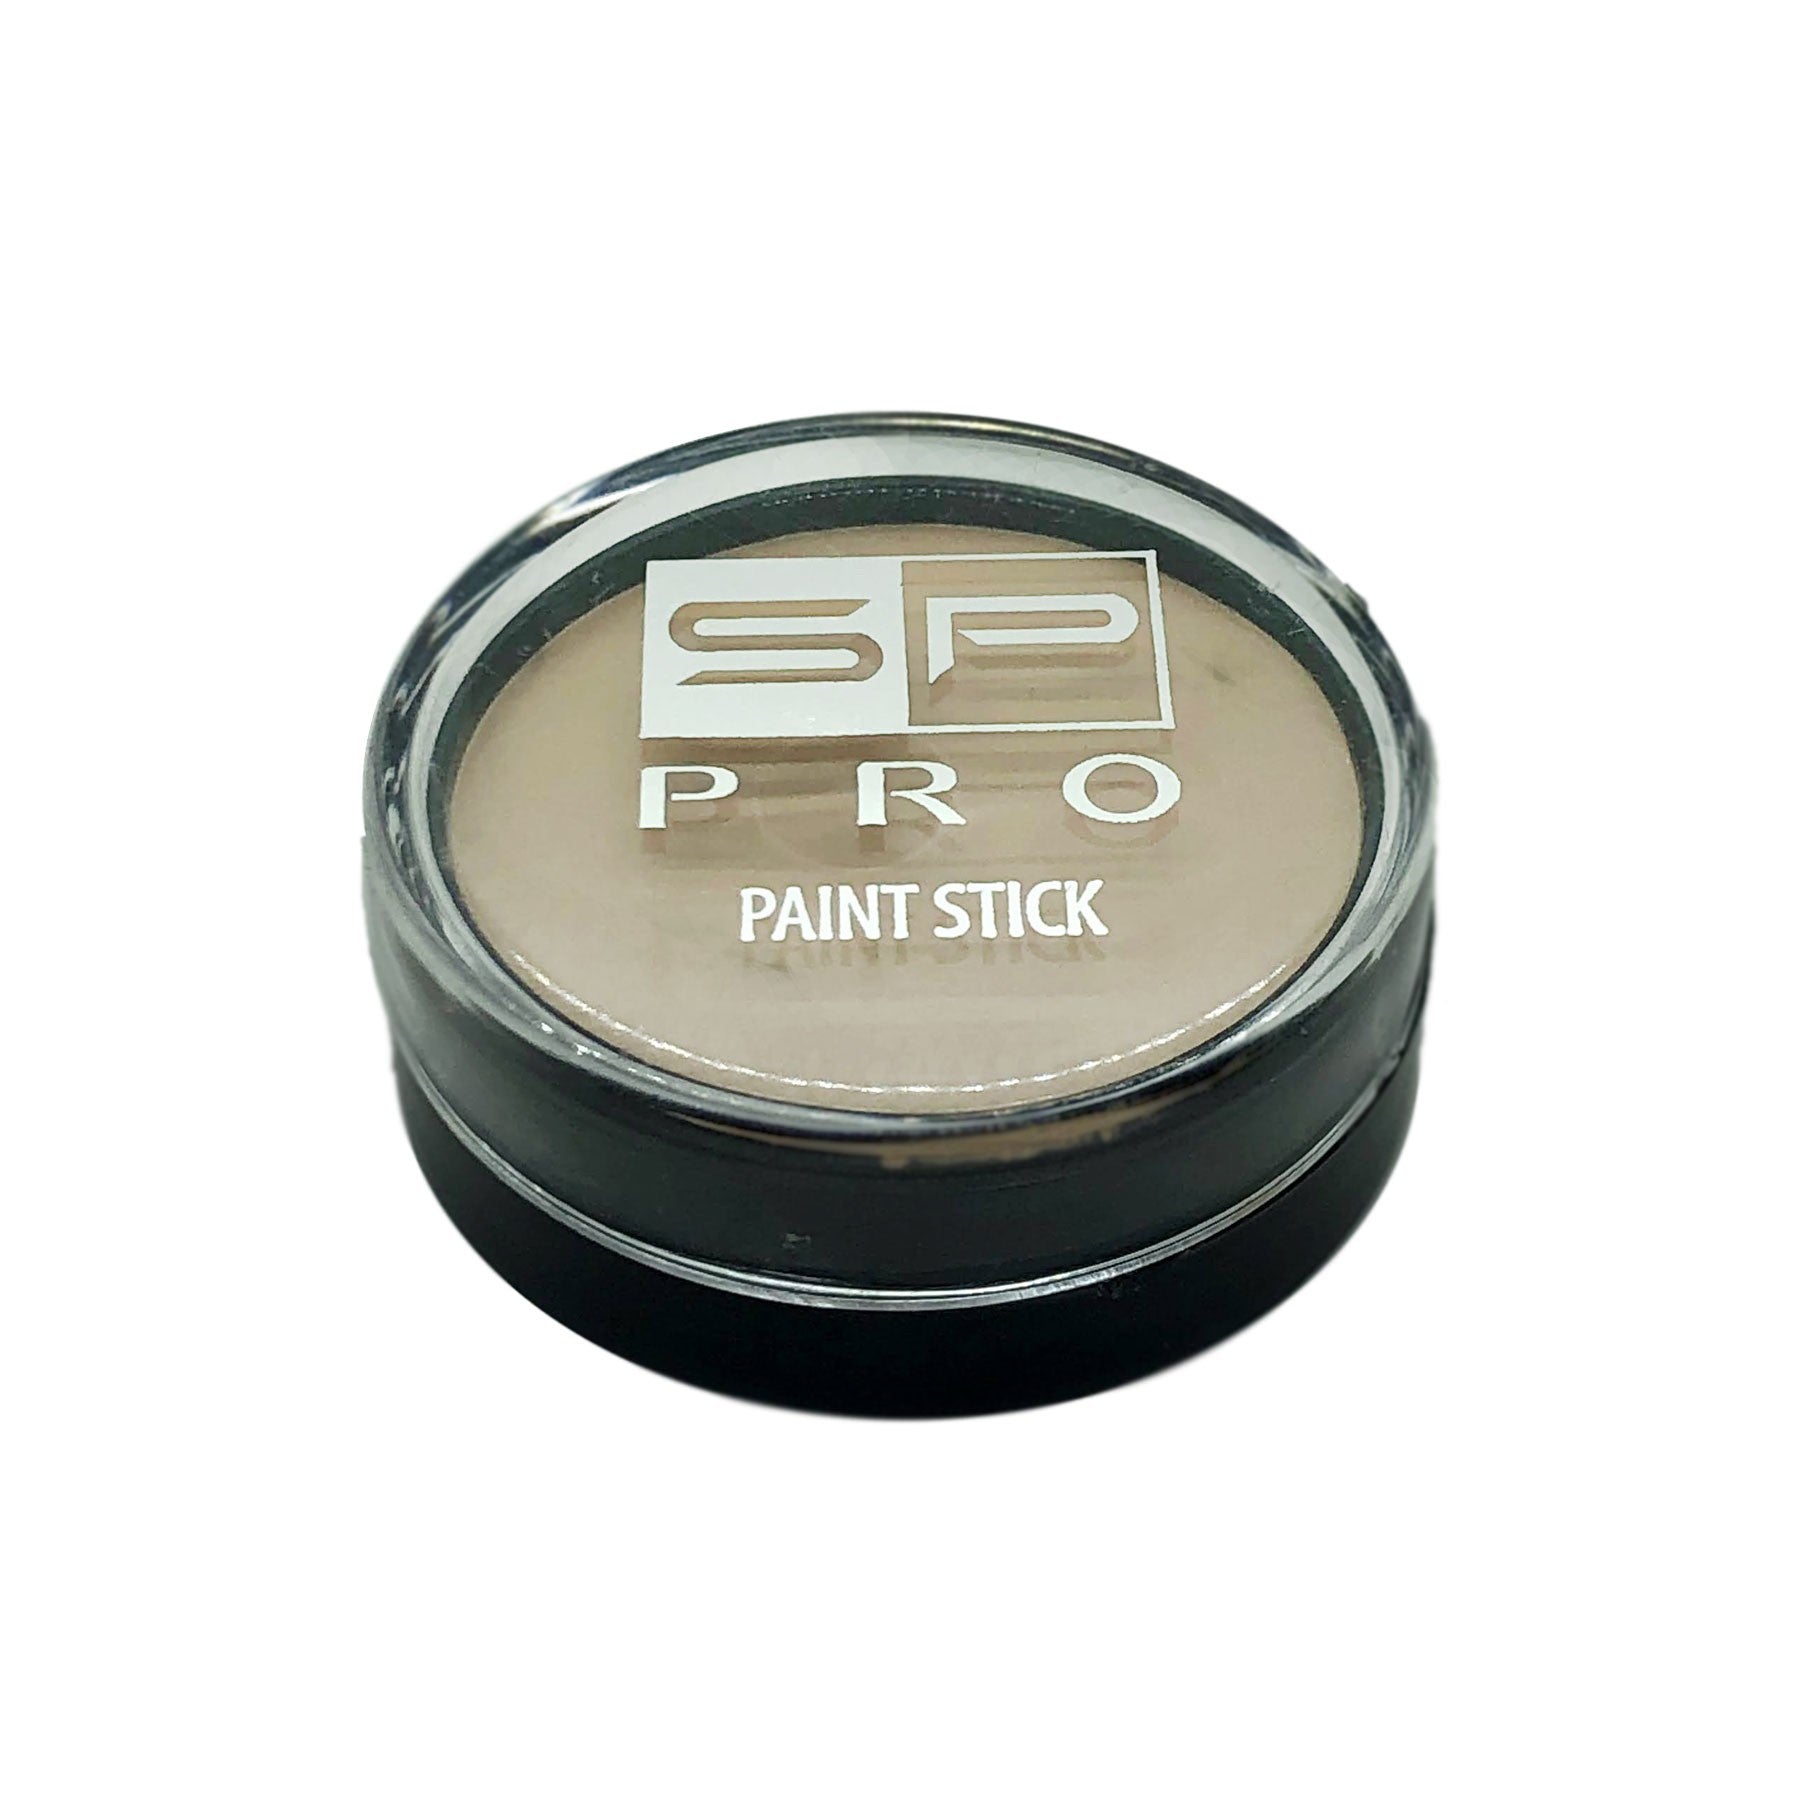 Paint Stick SP Pro